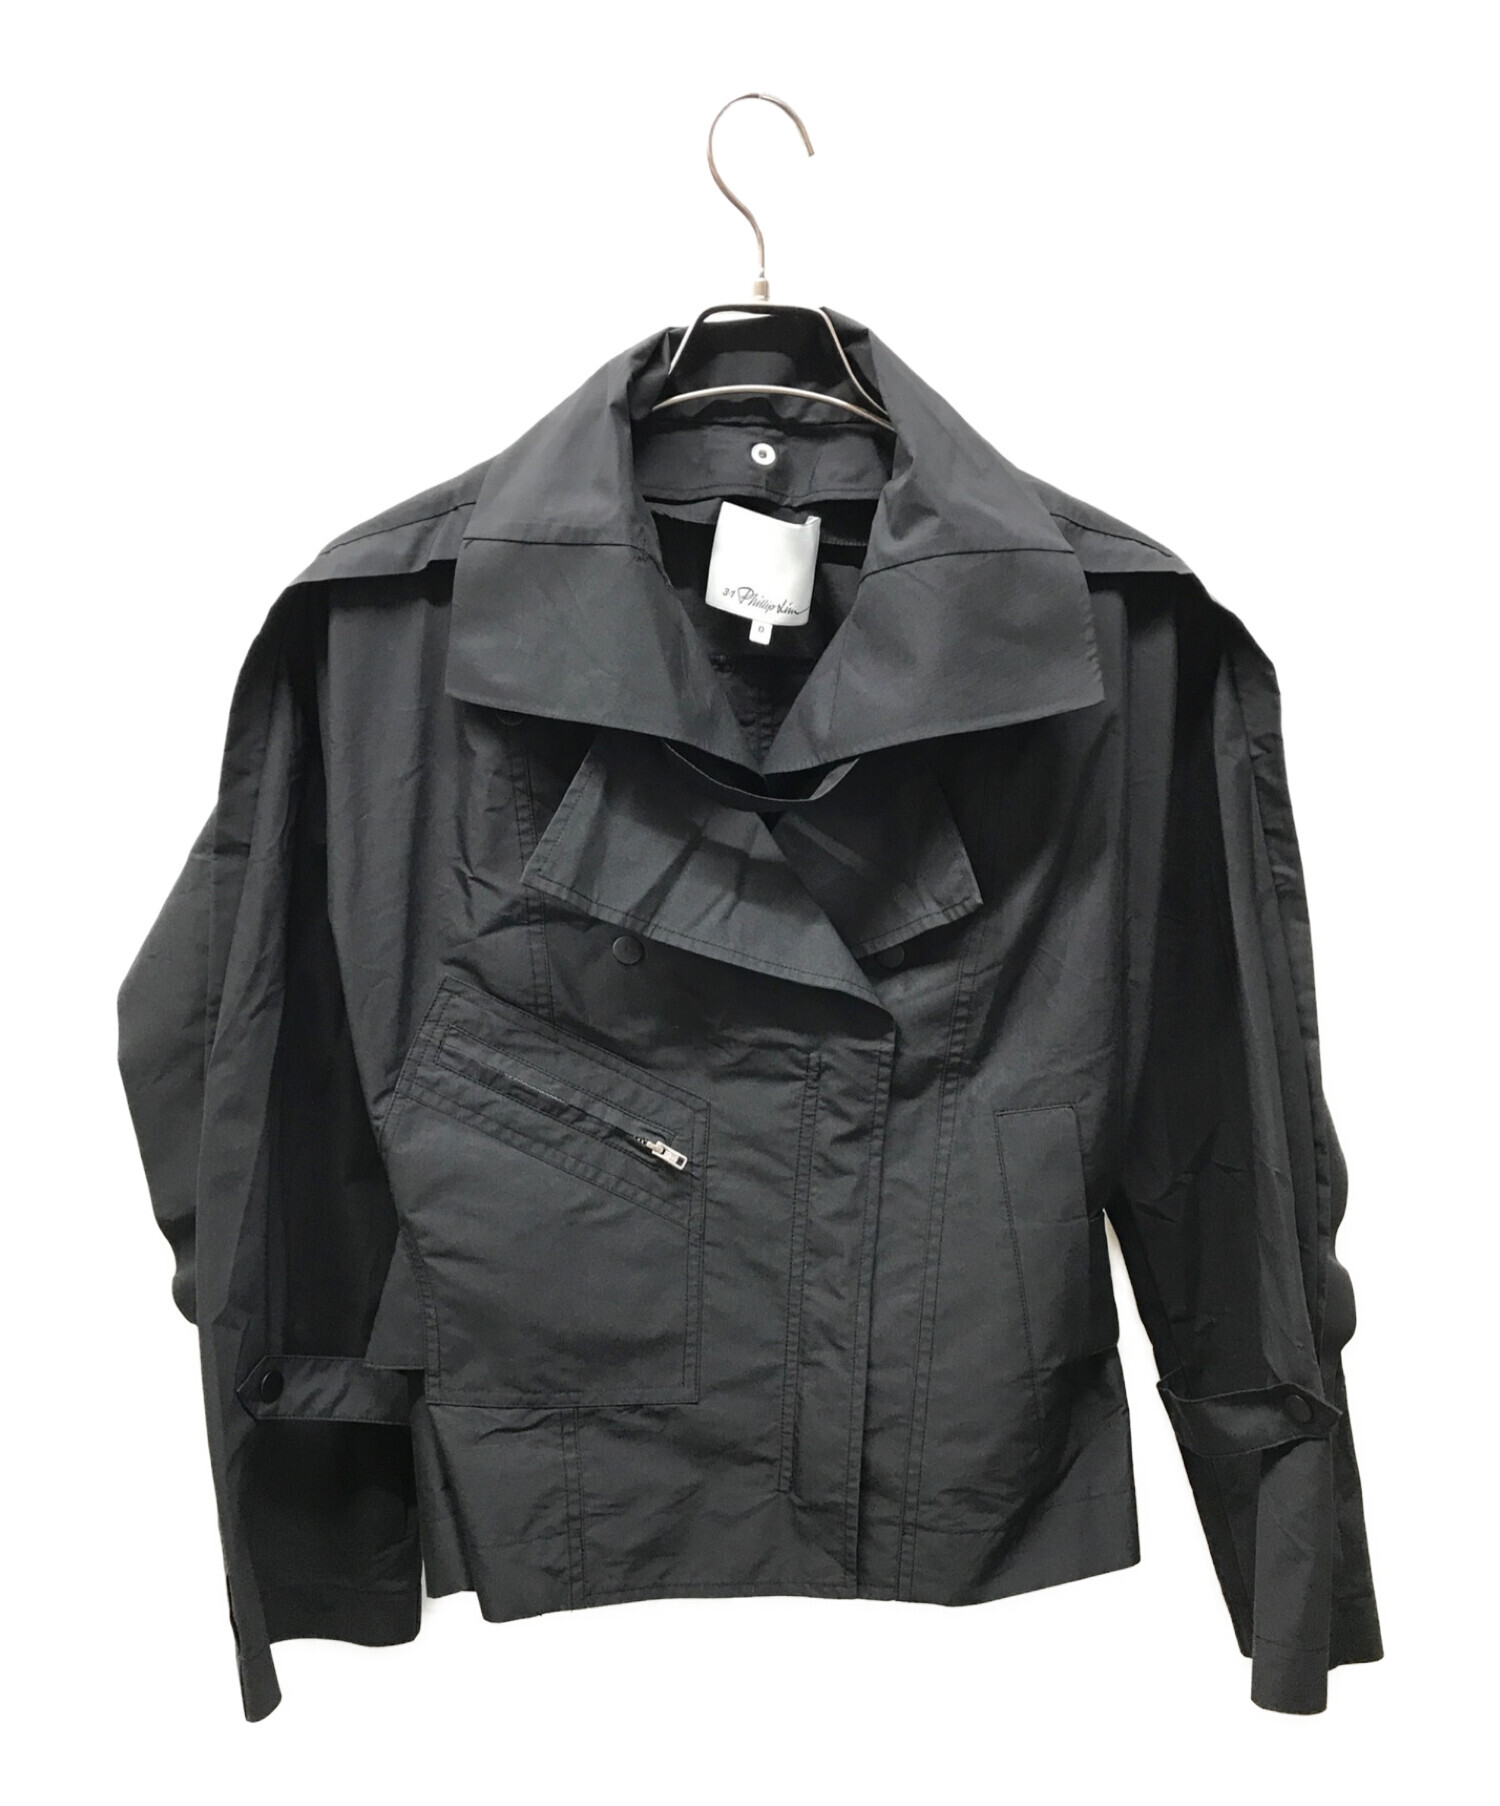 3.1 phillip lim (スリーワンフィリップリム) Detachable Collar Jacket ブラック